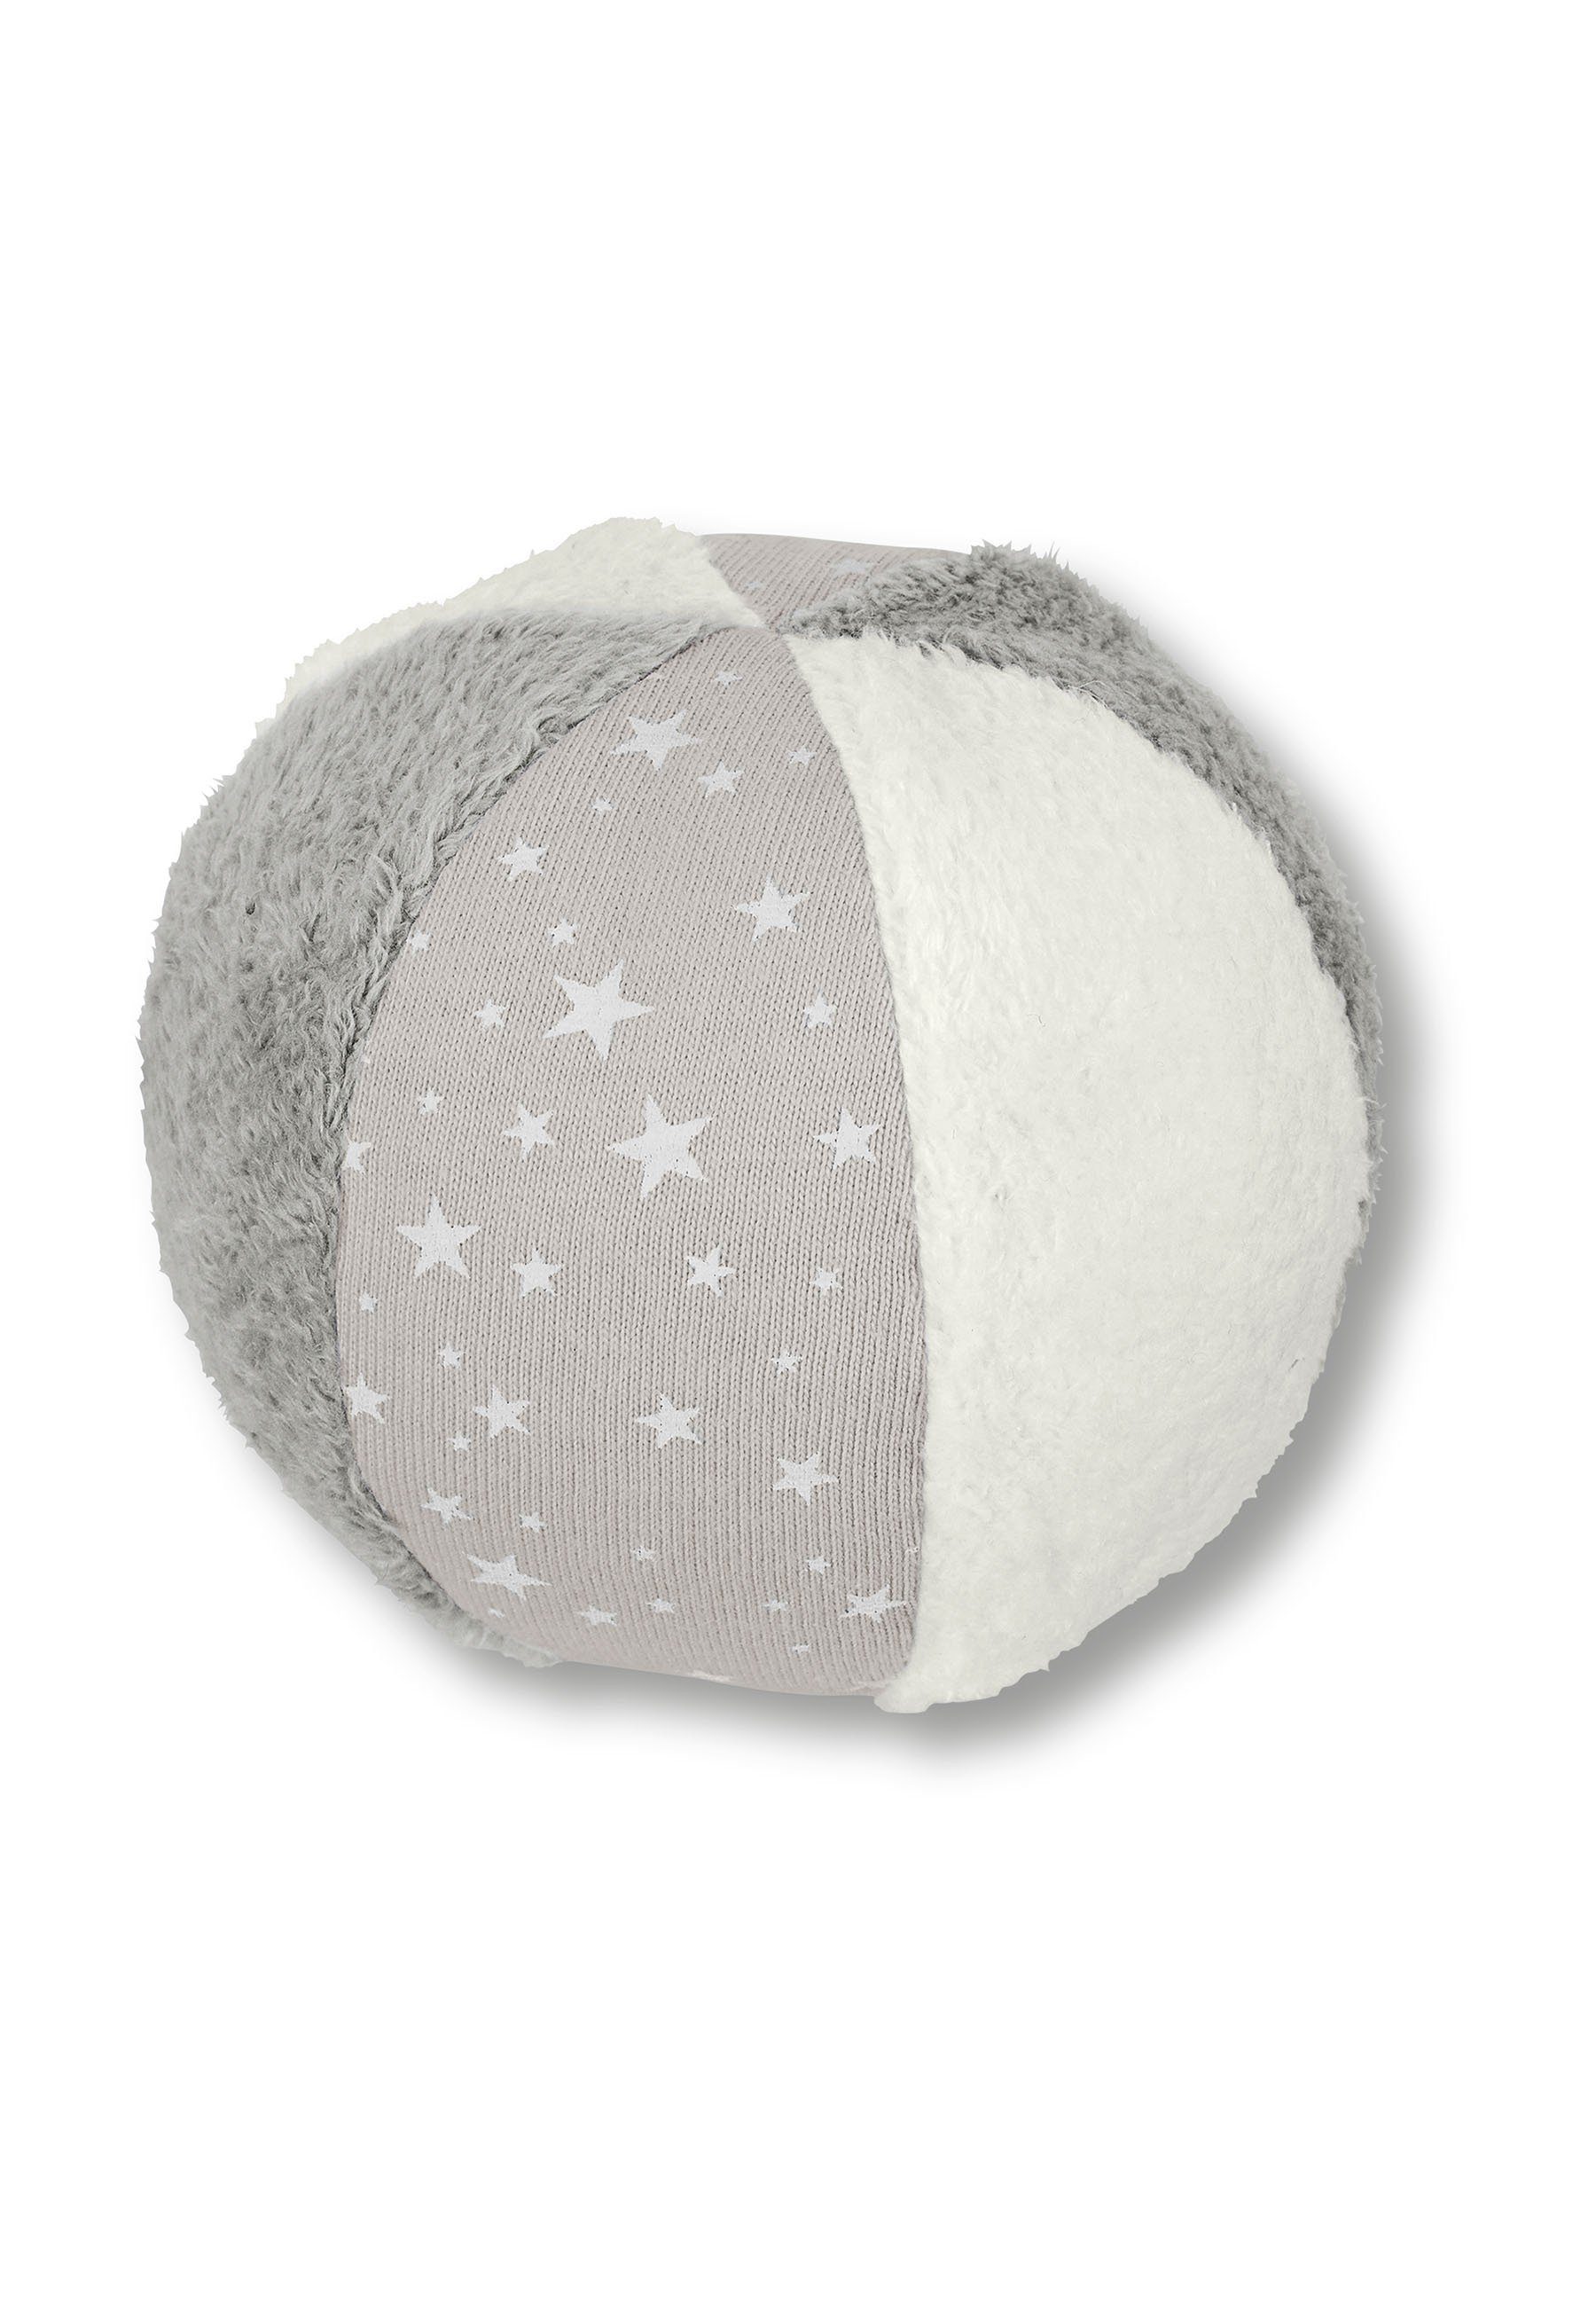 Sterntaler® Spielball Ball grau, Spielball - Baby Ball in Grau 9 cm groß  mit Rassel - Weicher Babyball im Materialmix aus Baumwolle und Polyester -  fühlen, rollen, hören, krabbeln - Bälle für Kinder gemustert Bälle